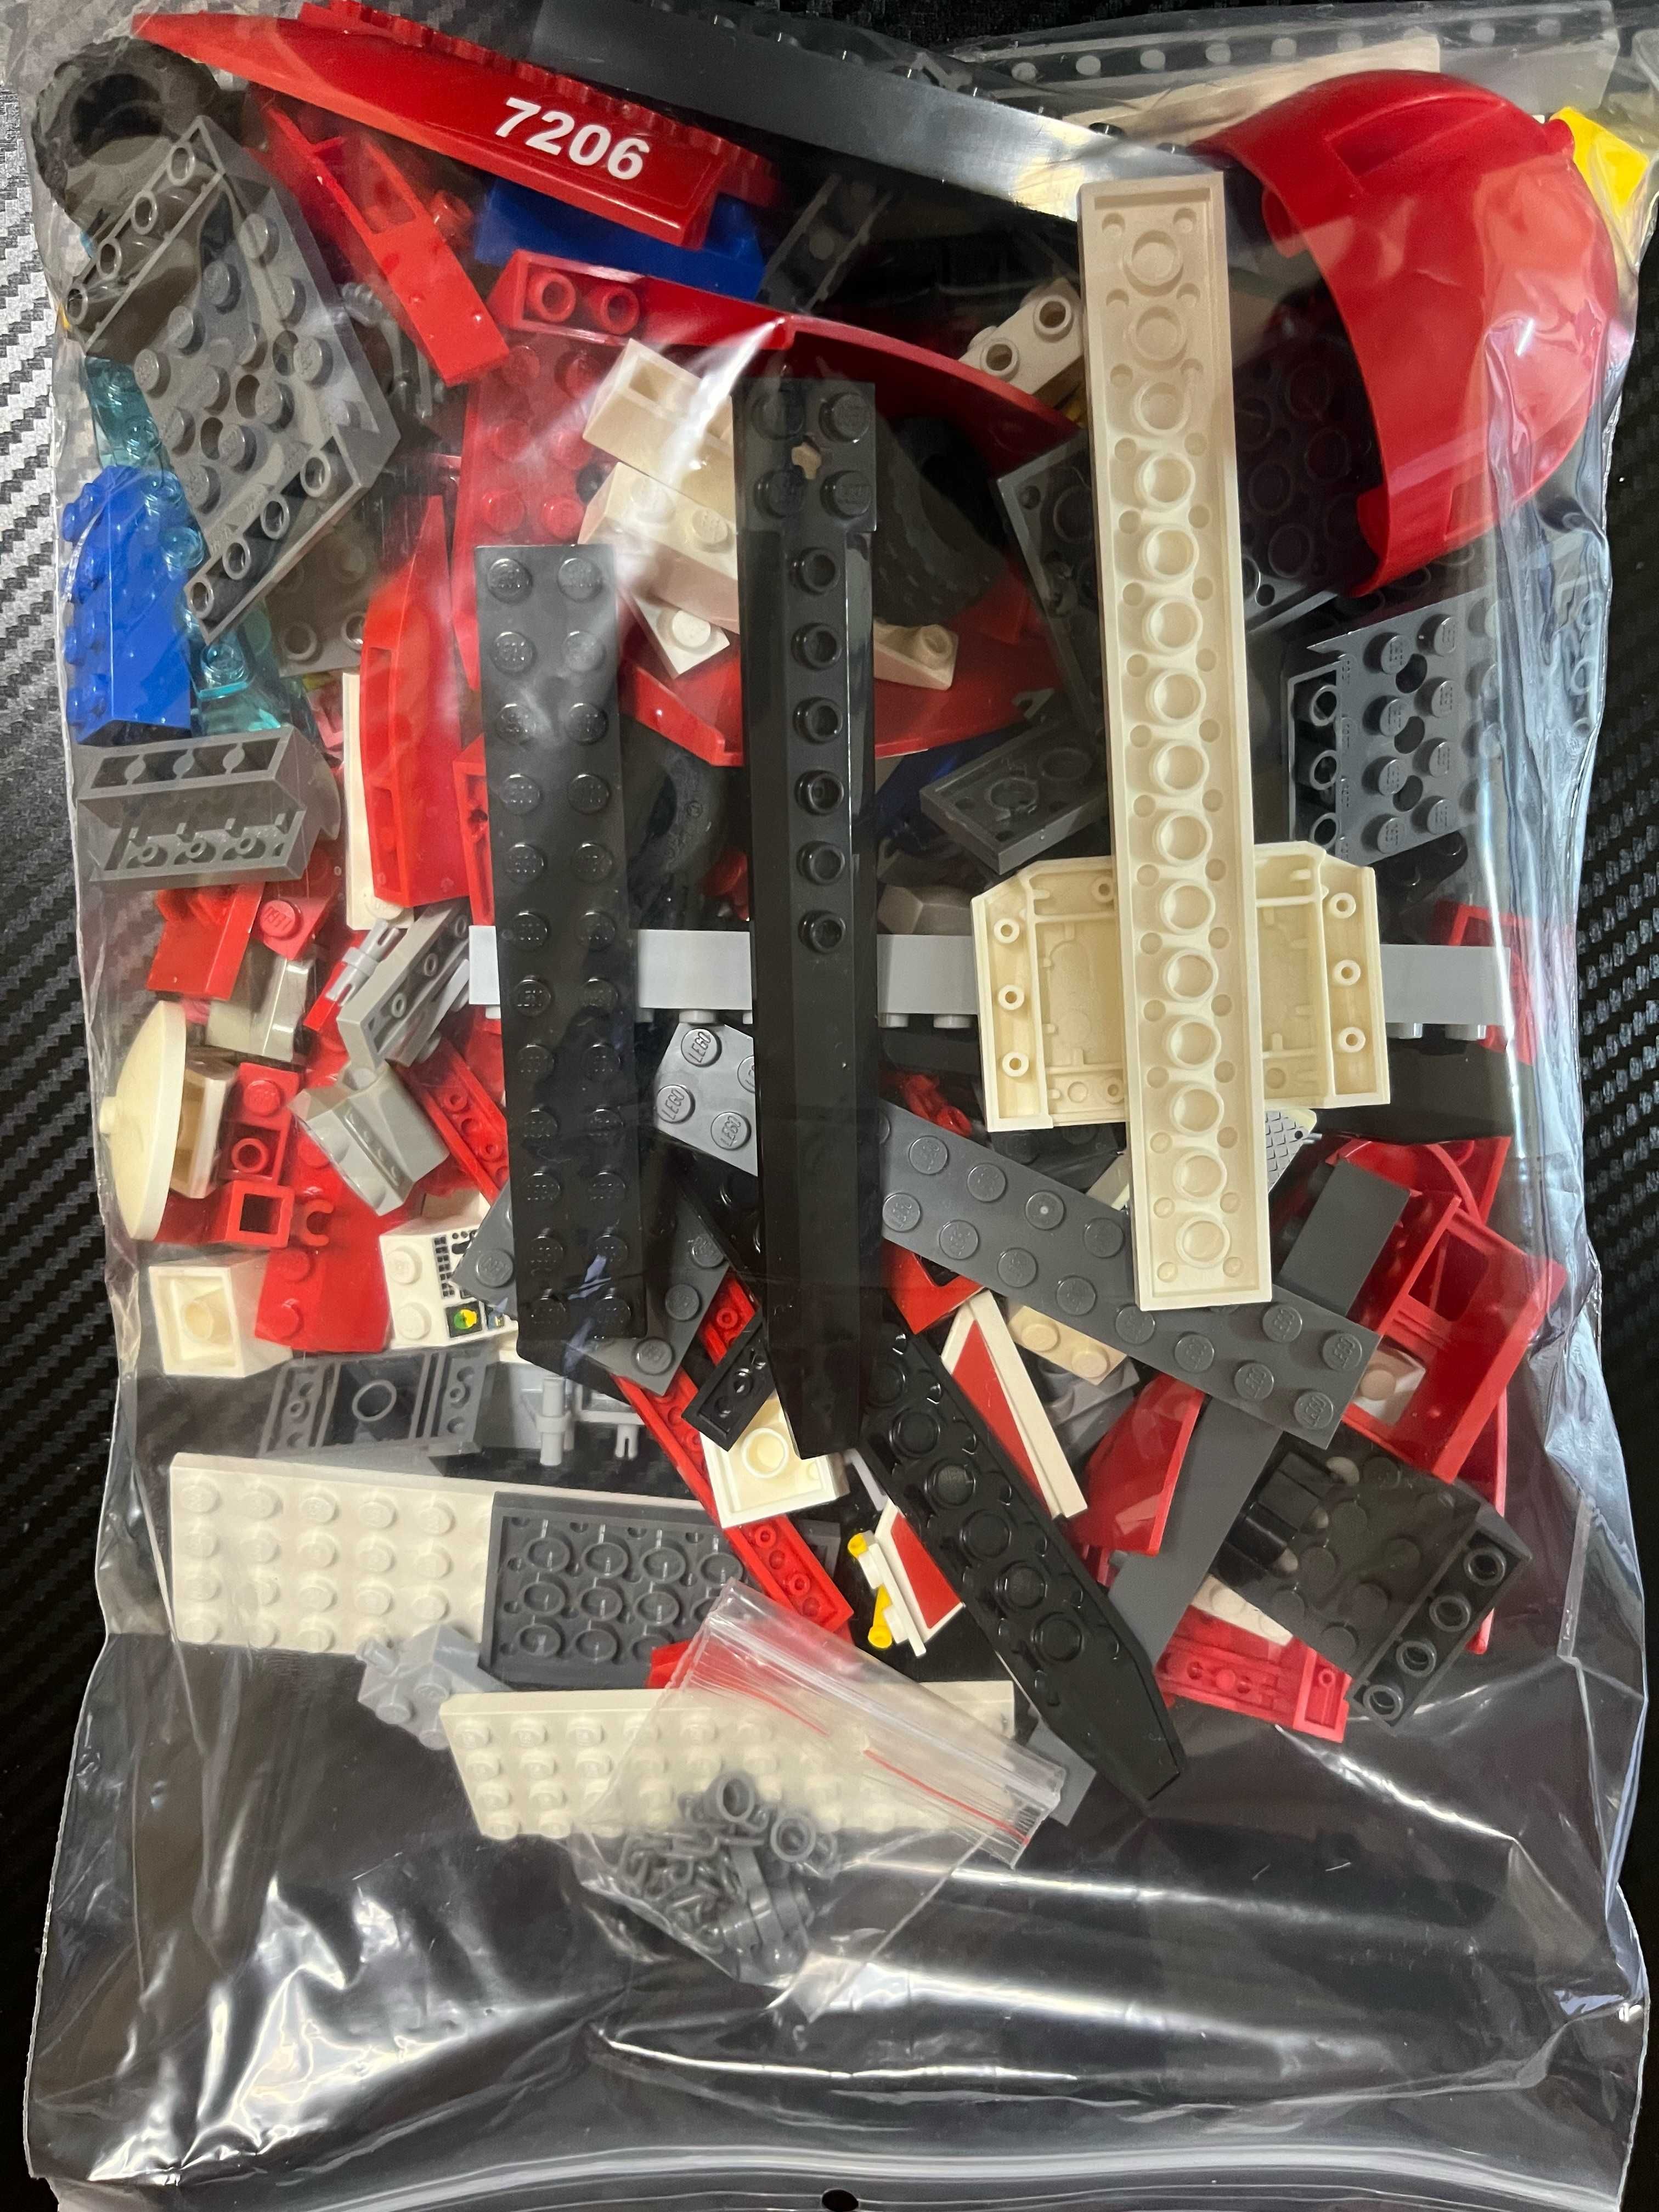 Lego City 7206, Helikopter straży pożarnej - brakuje dwóch elementów